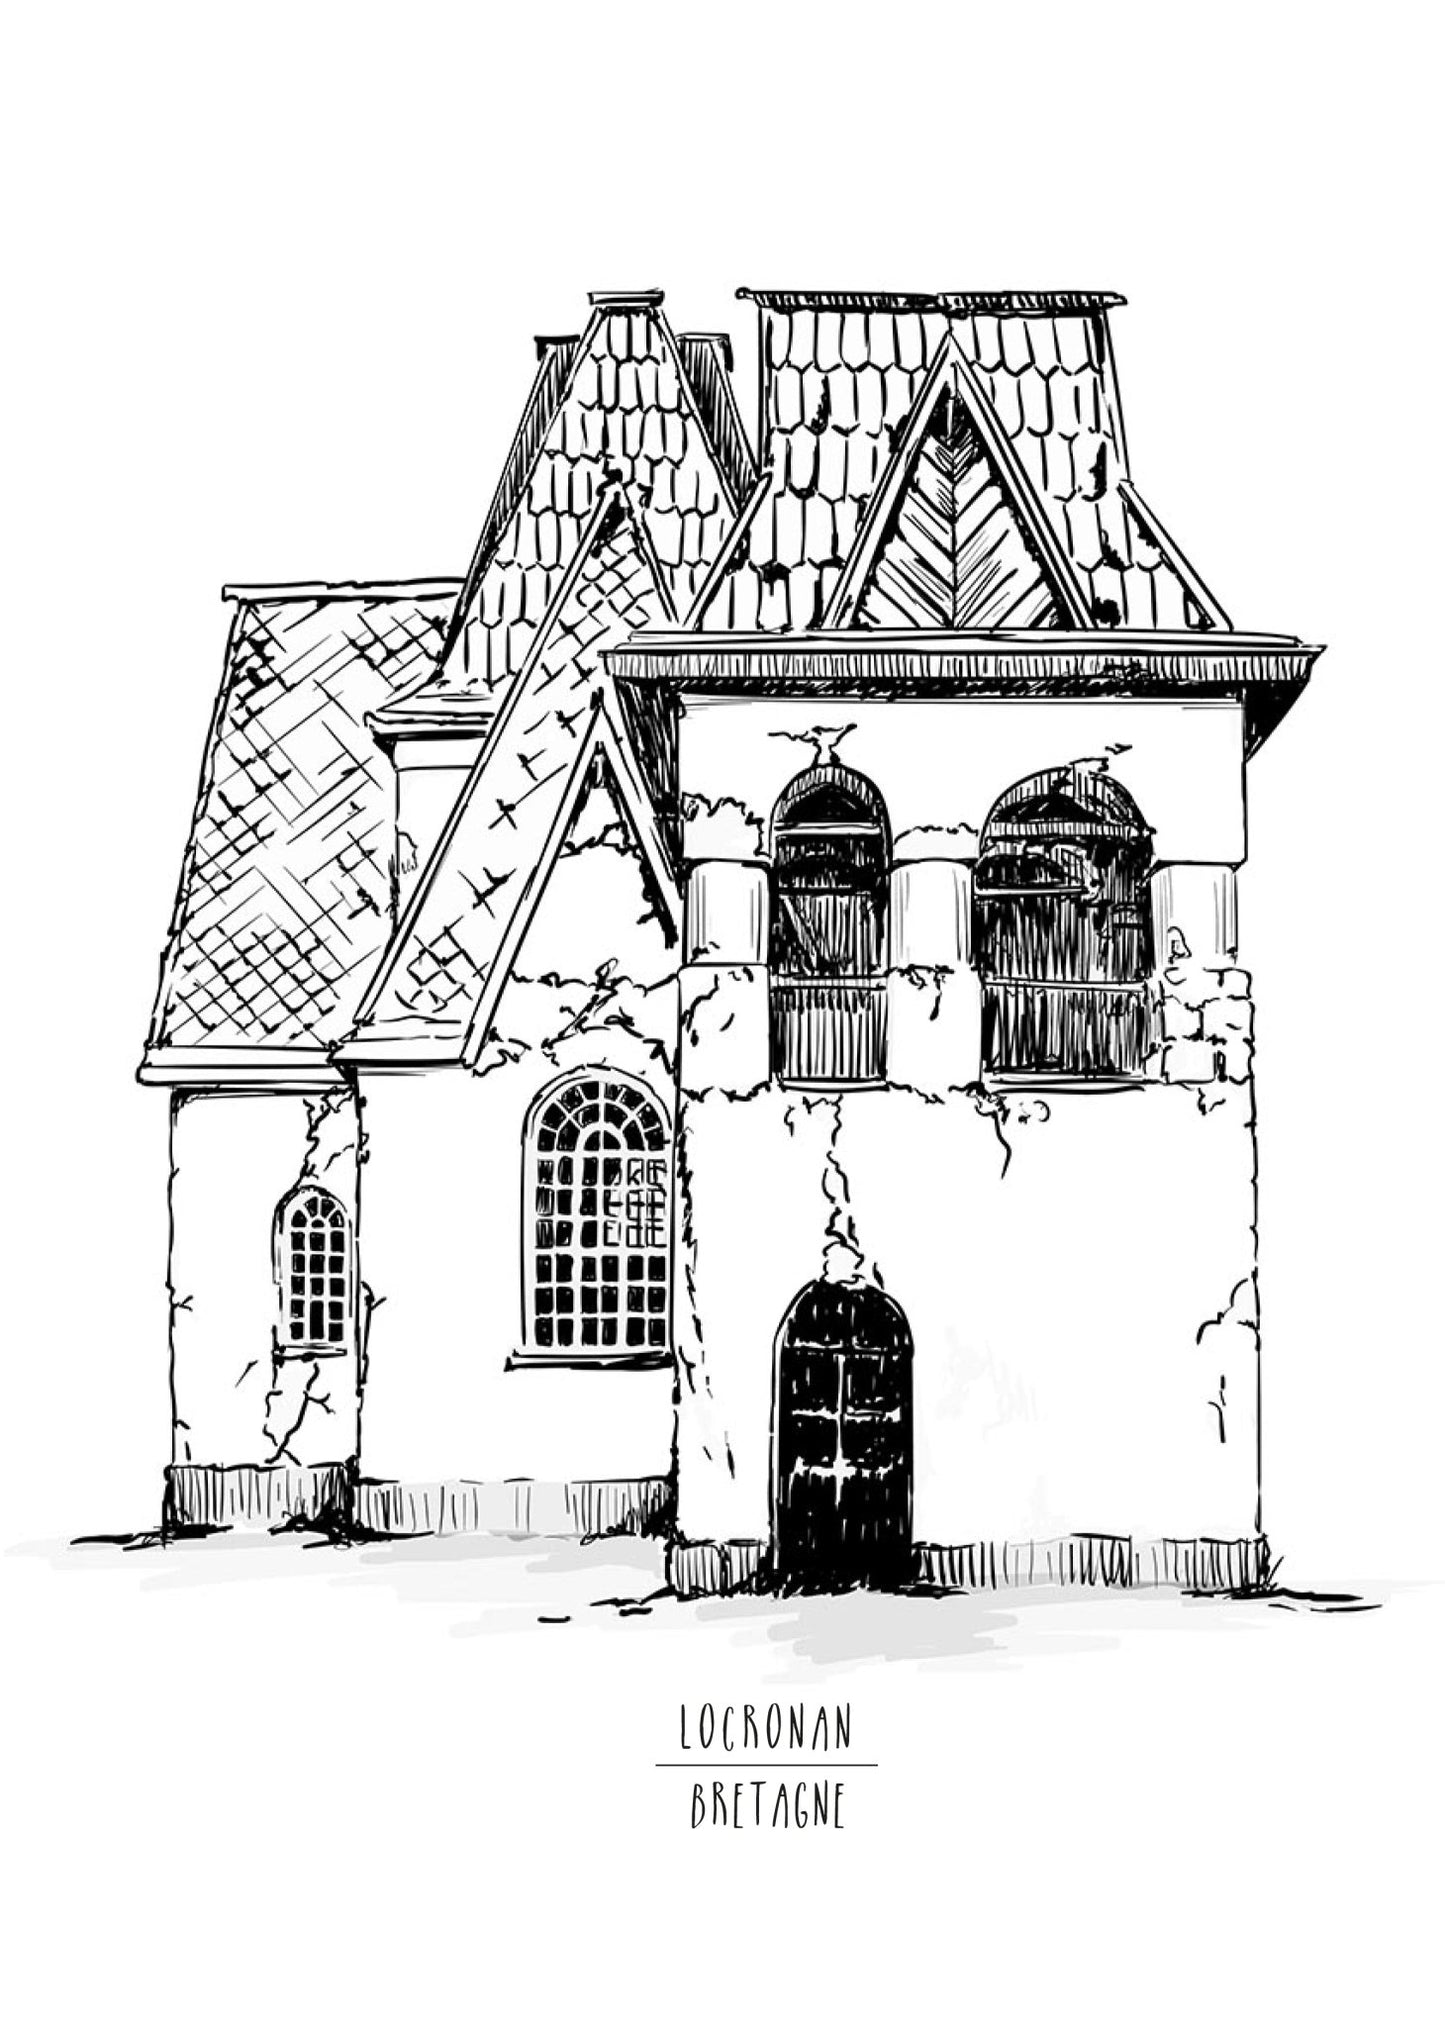 Städte Häuser Burgen Malbuch für Erwachsene 2 (Buchdruck) - Monsoon Publishing